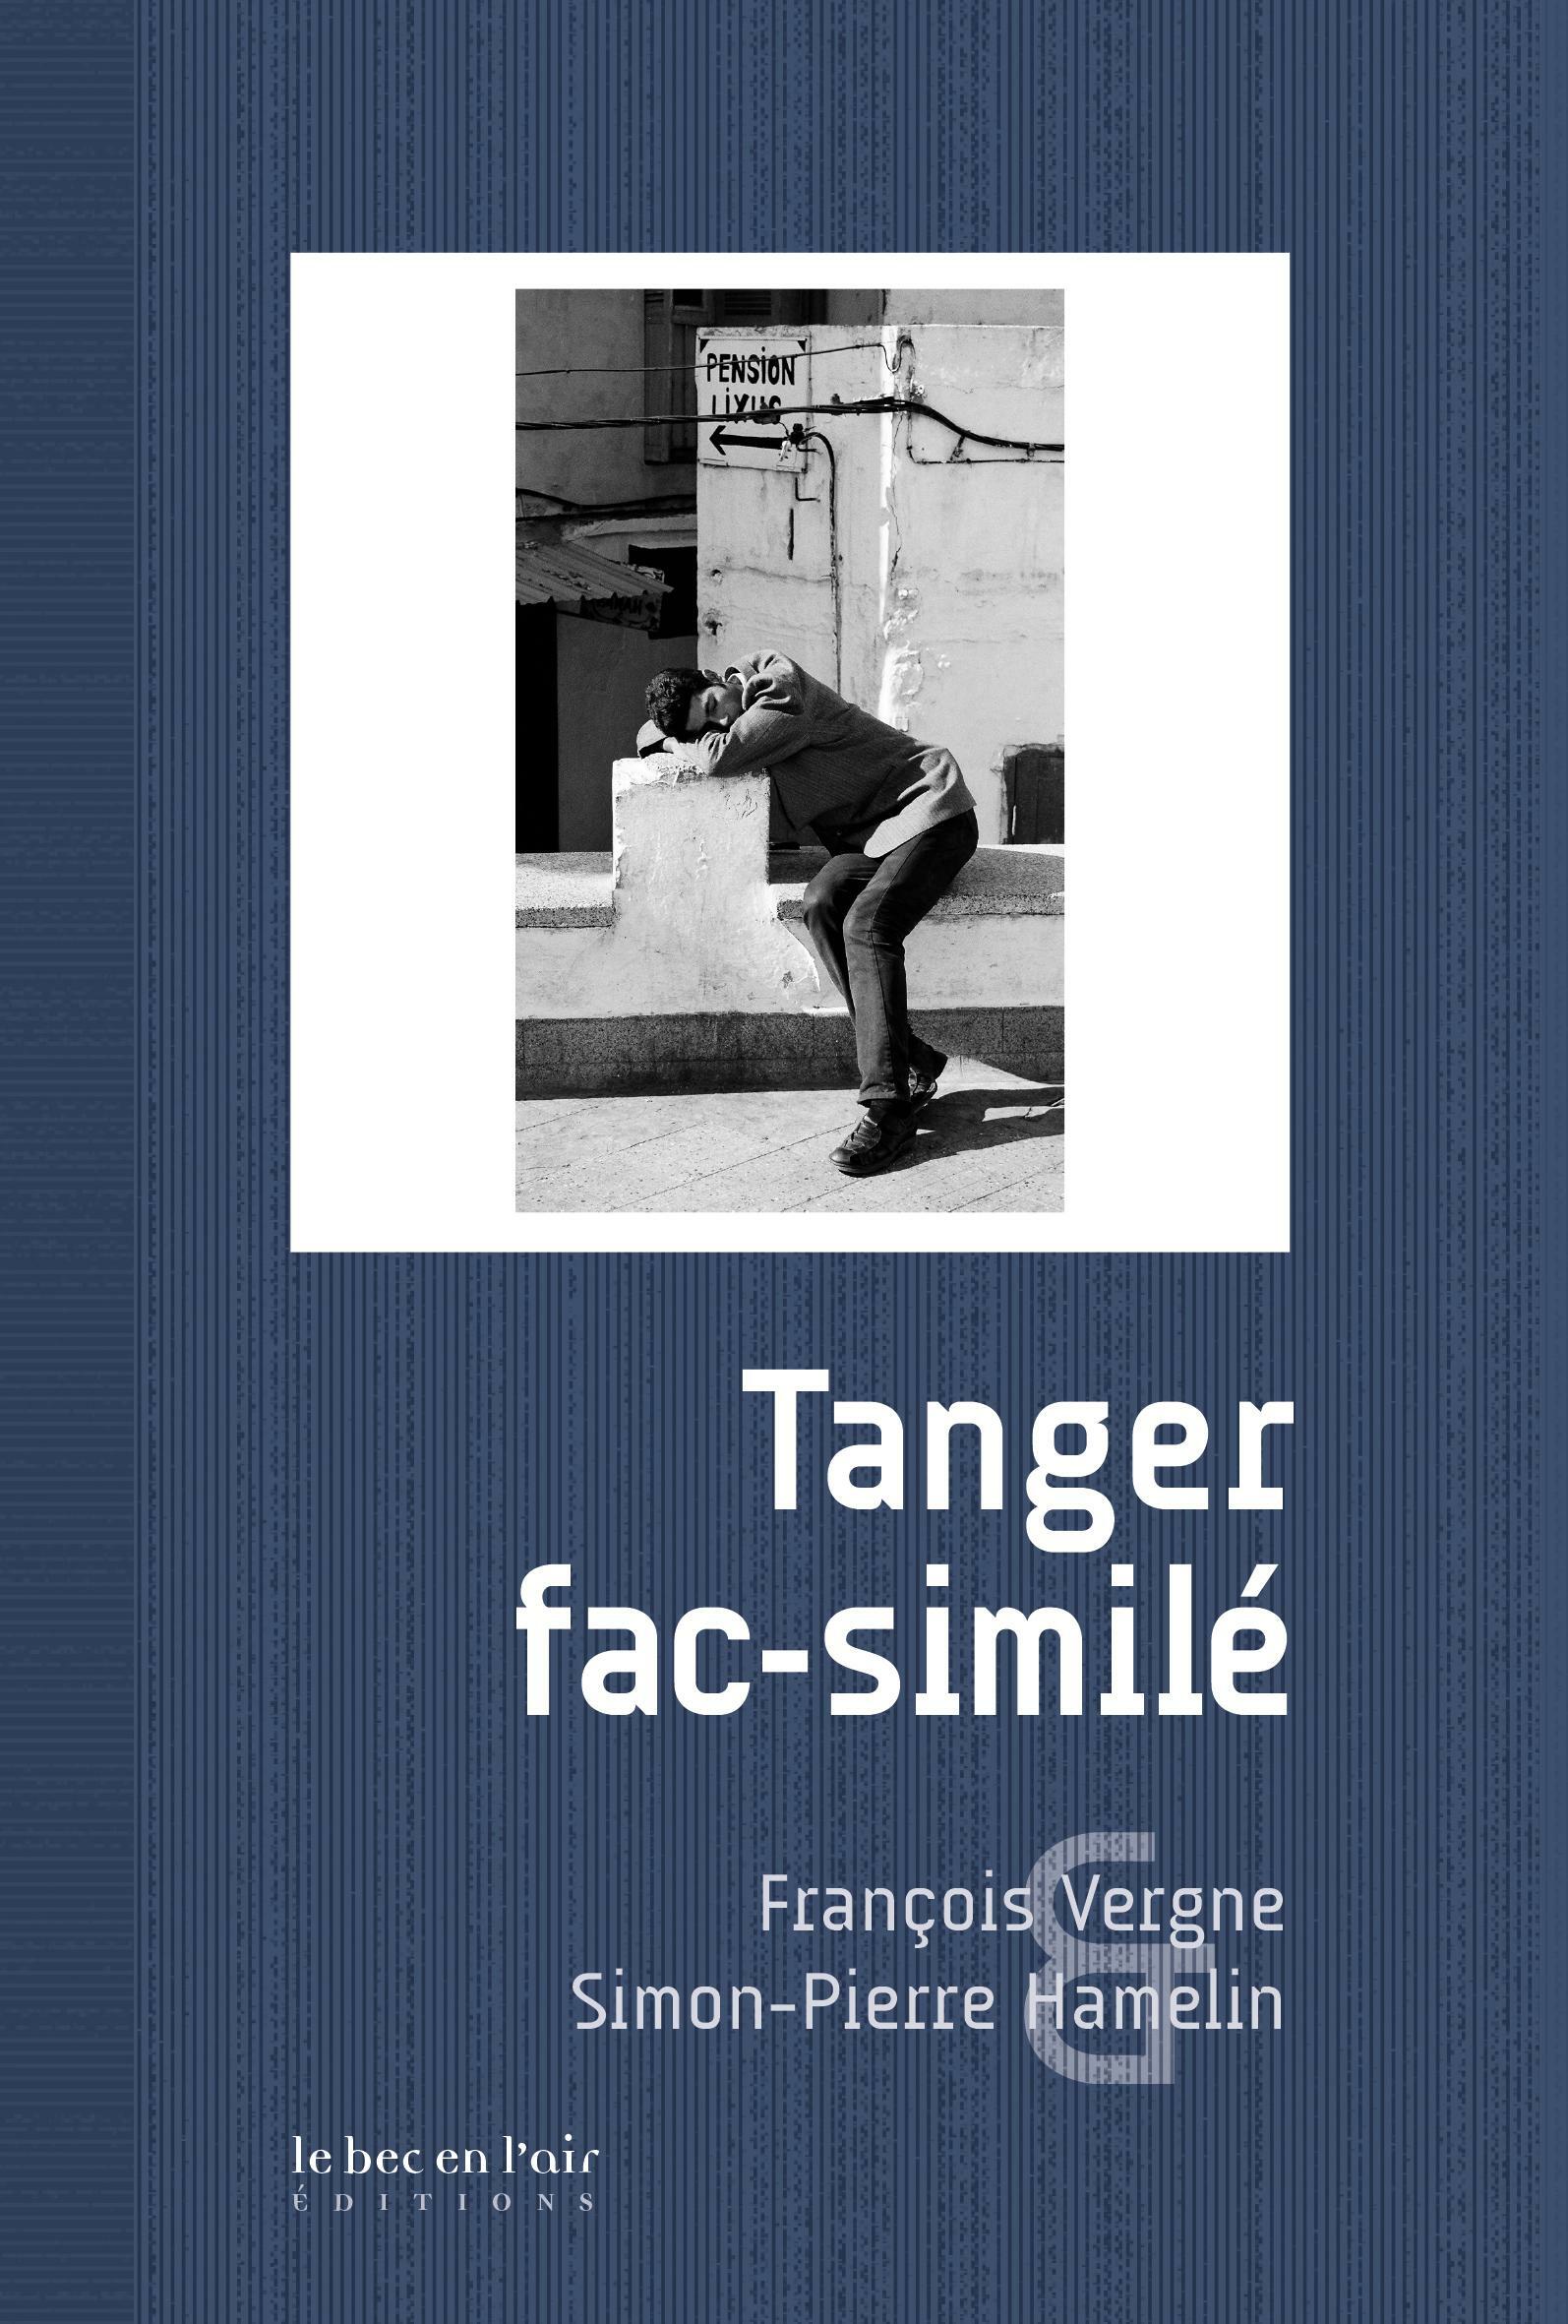 A facsimile of Tangier